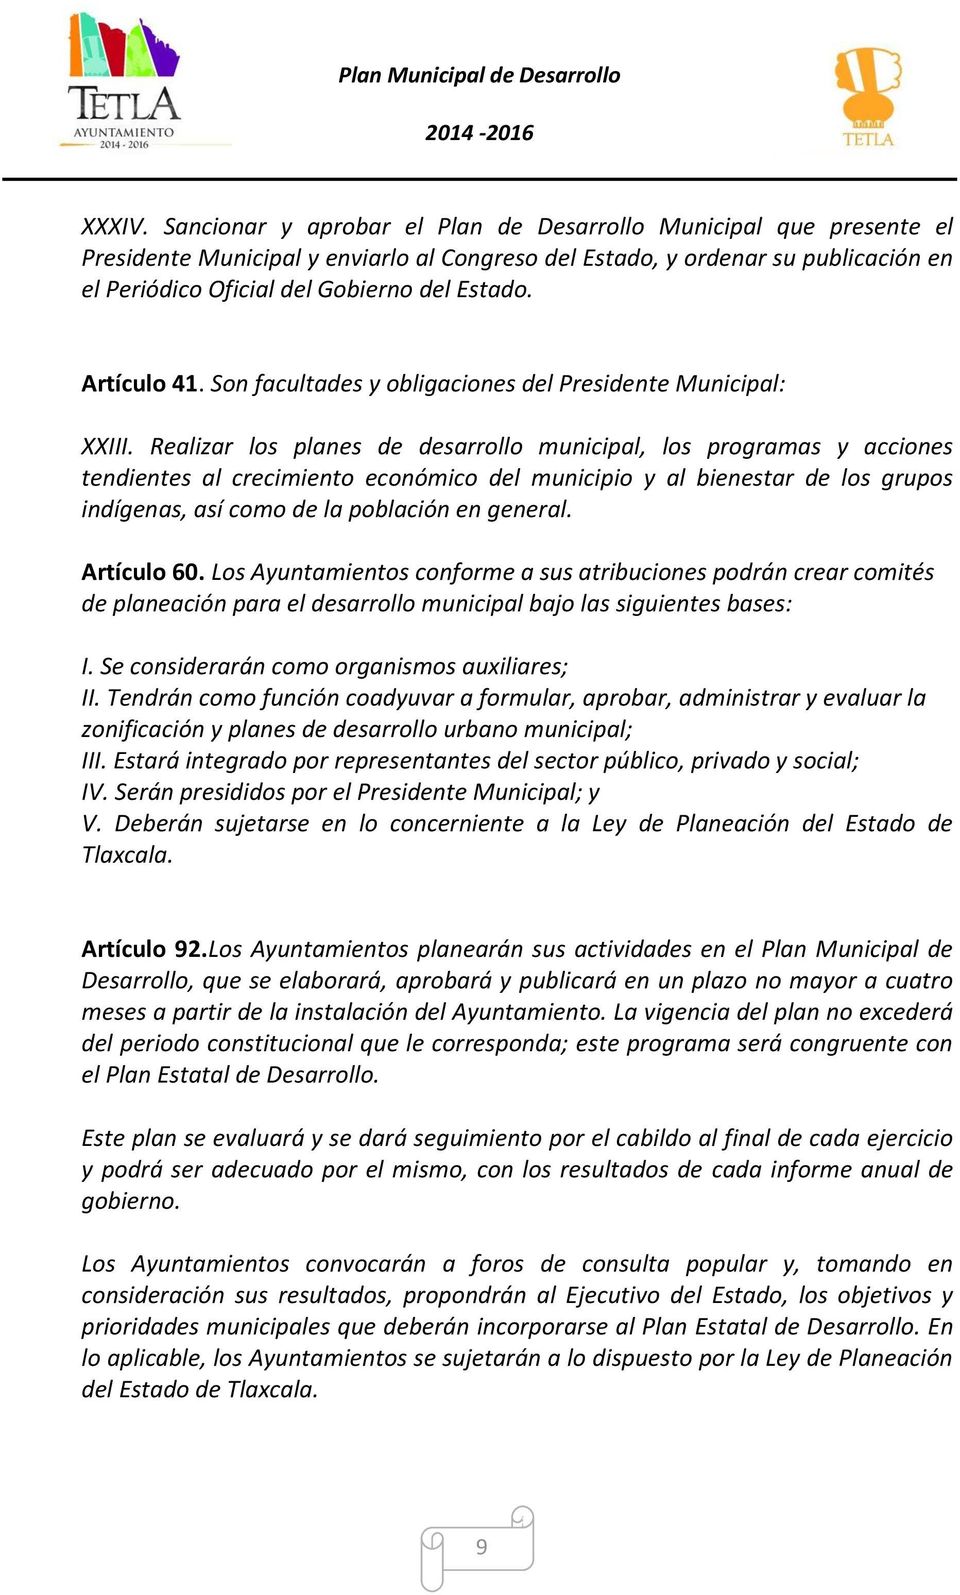 Artículo 41. Son facultades y obligaciones del Presidente Municipal: XXIII.